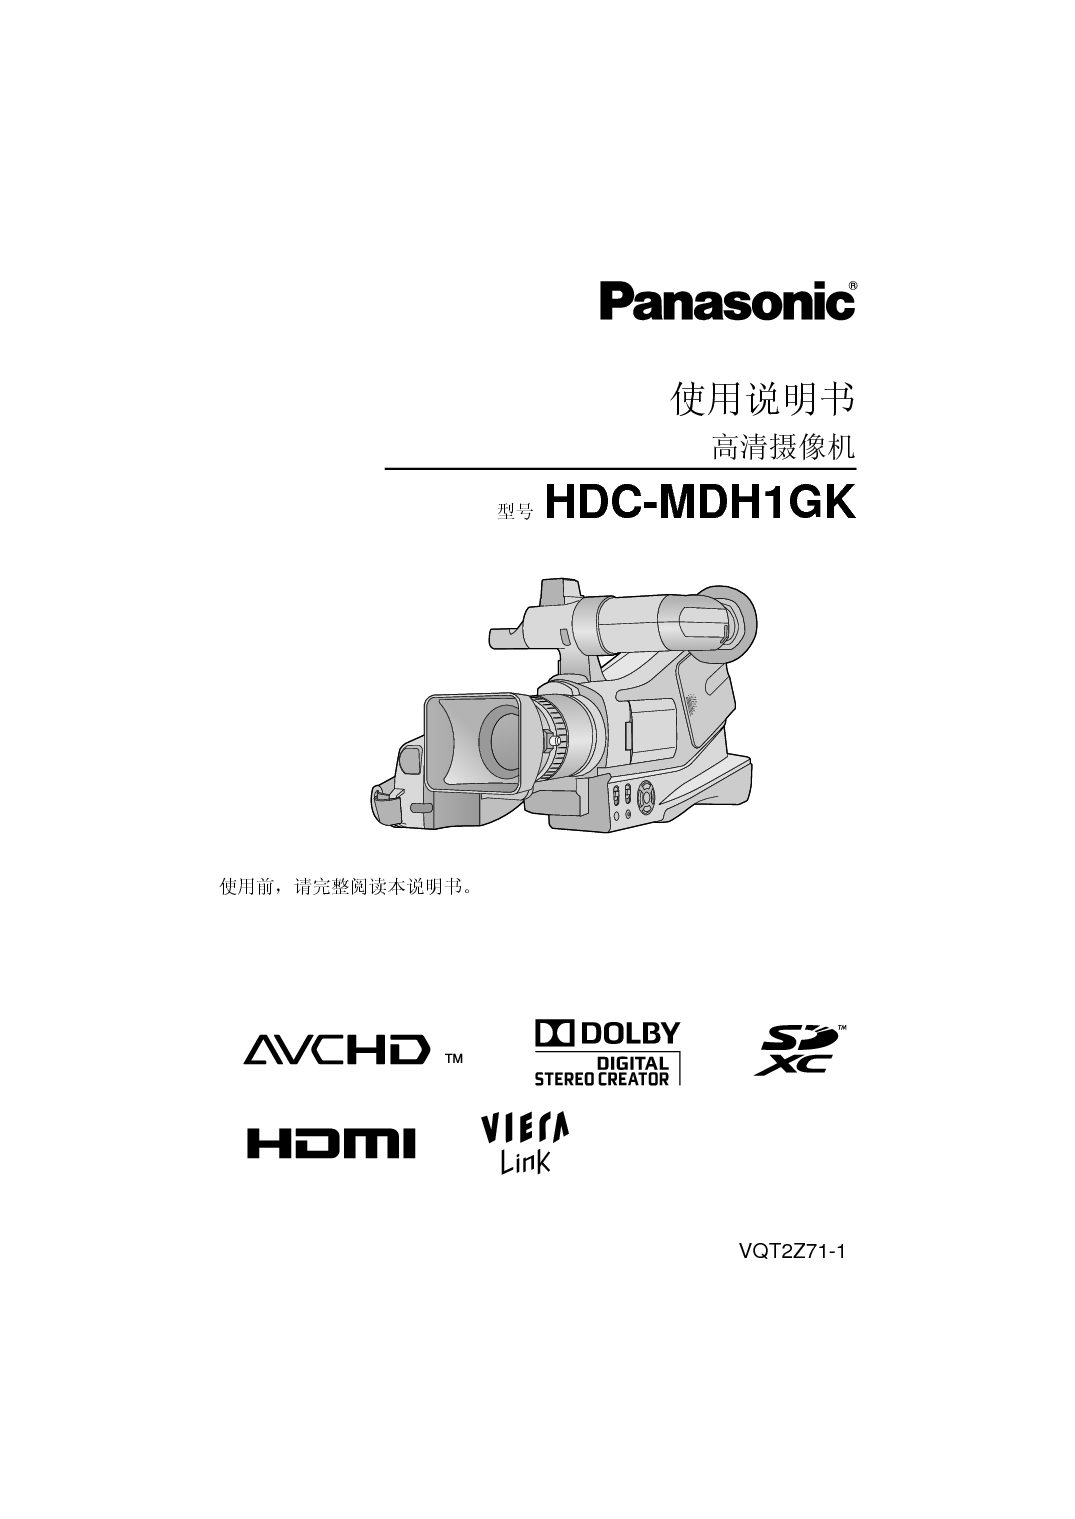 松下 Panasonic HDC-MDH1GK 说明书 封面